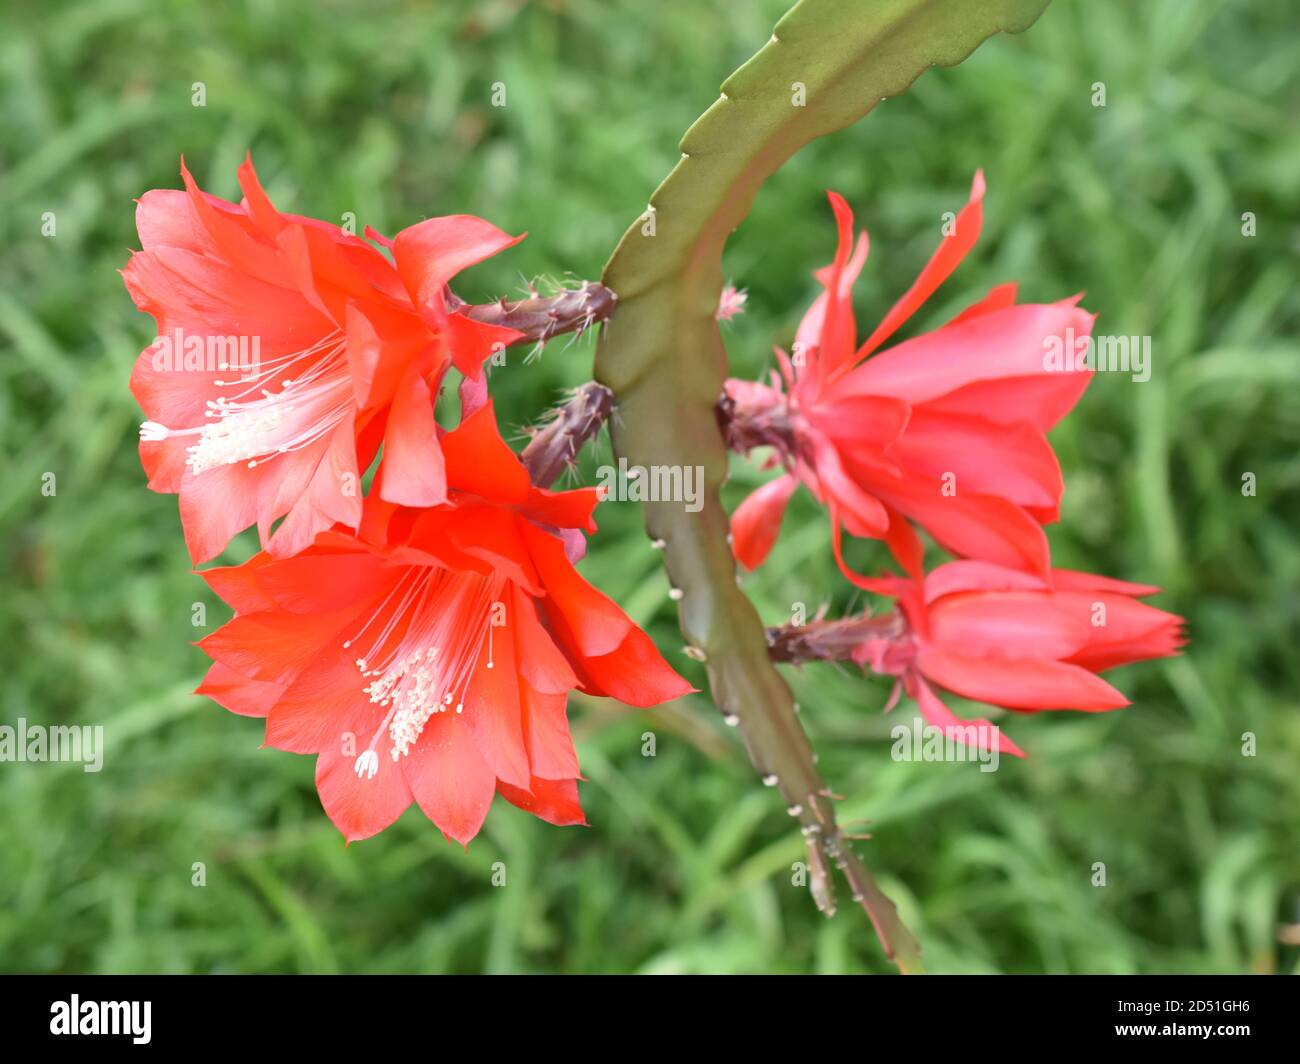 Epiphyllum Orchidee Kaktus rote Blume isoliert auf grünem Hintergrund  Stockfotografie - Alamy